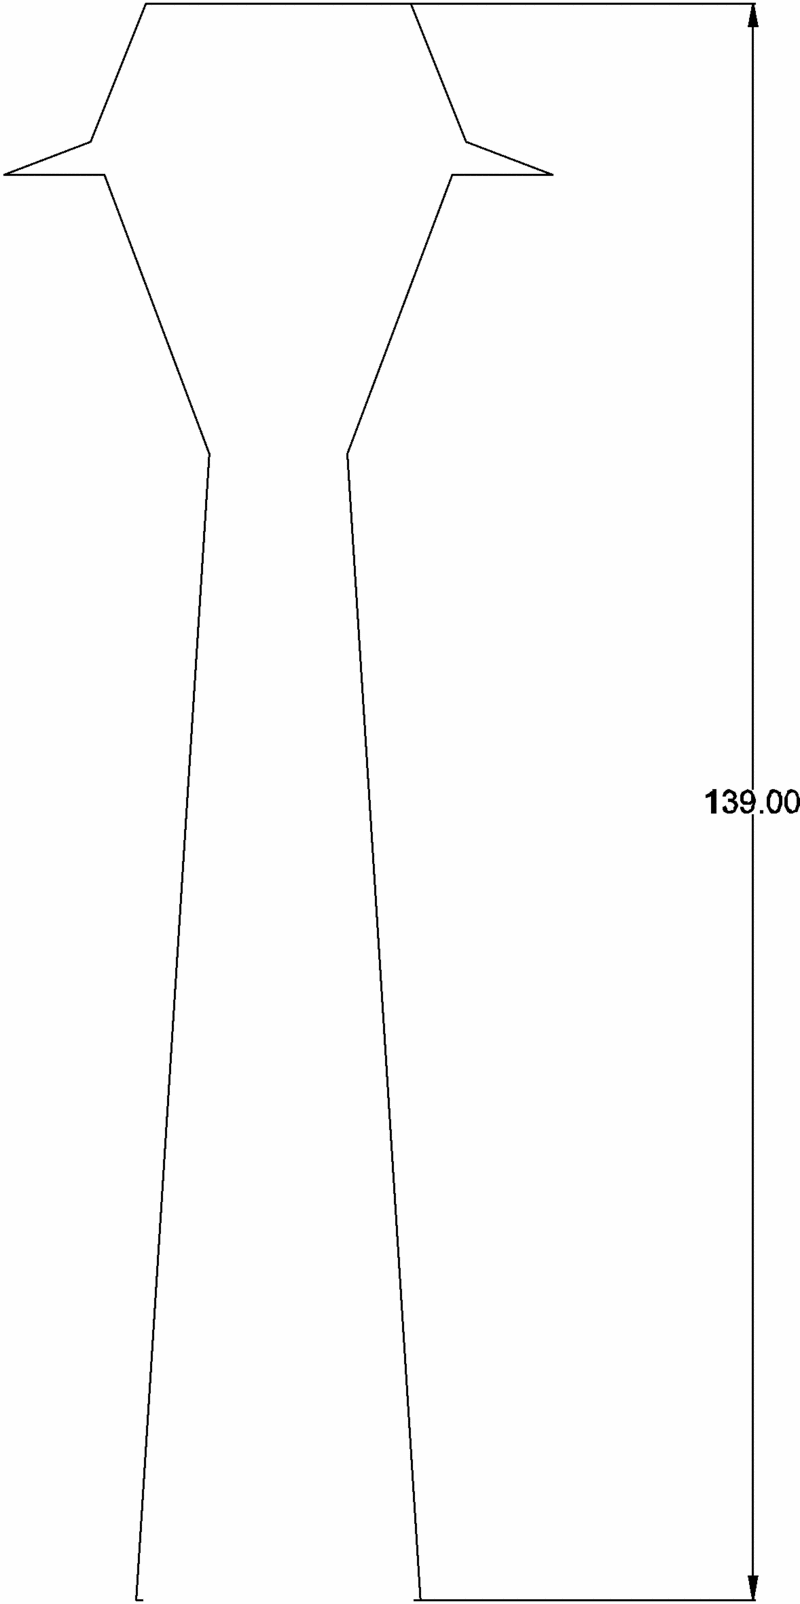 [JPPENNATI] Sous Station 1500 volts échelle 1/160 Pylone10